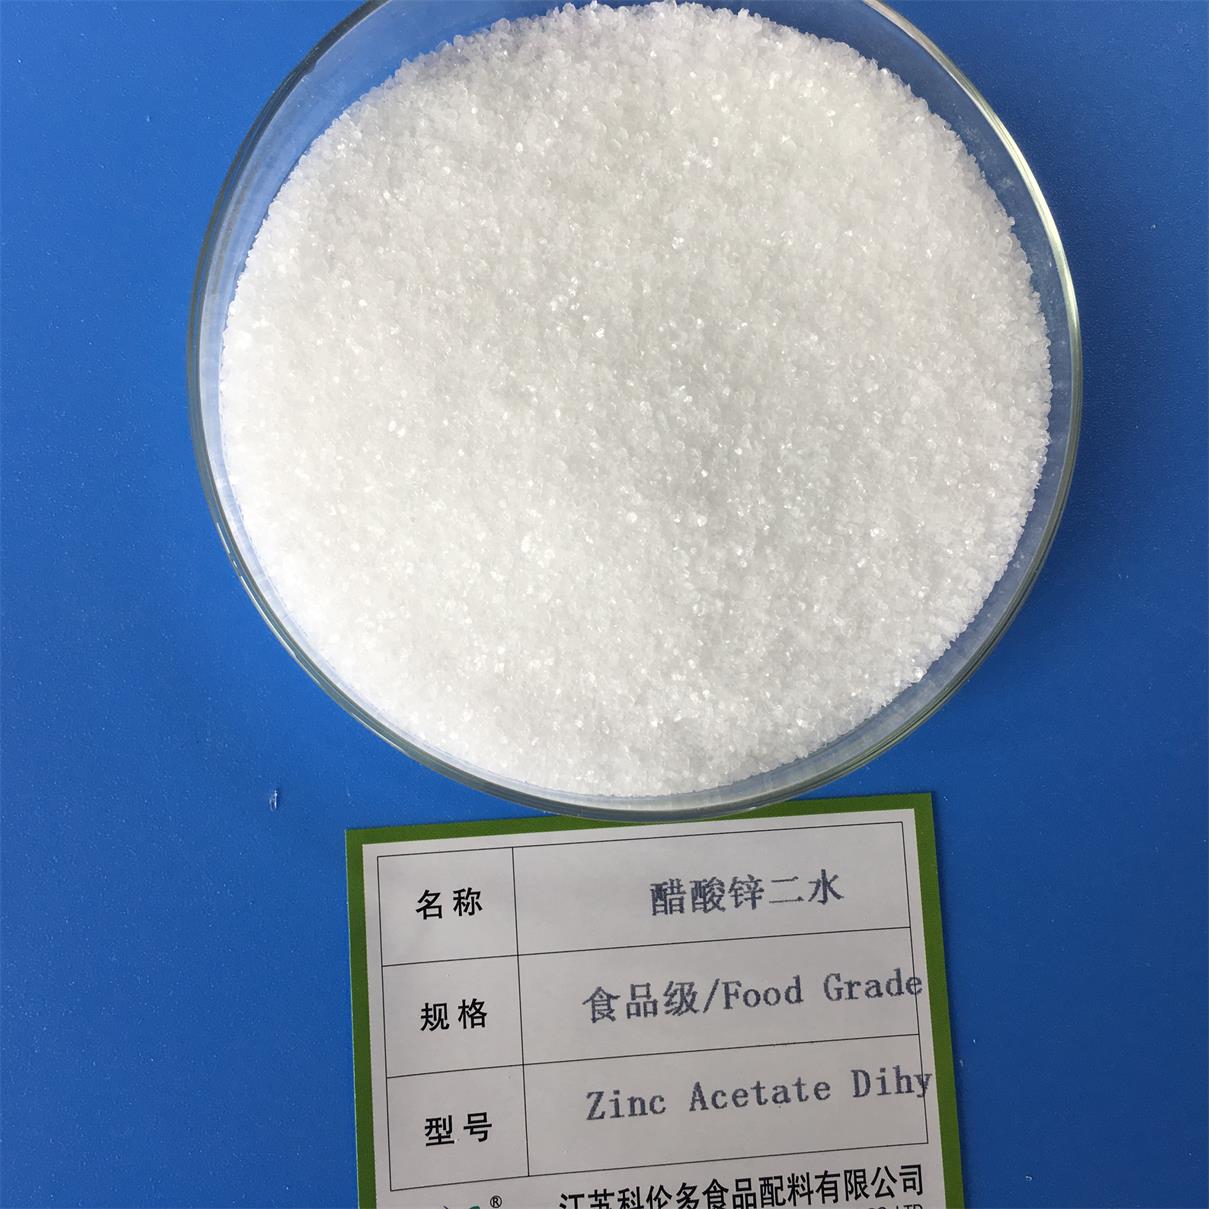 食品级医药级醋酸锌,food grade zinc sulfate